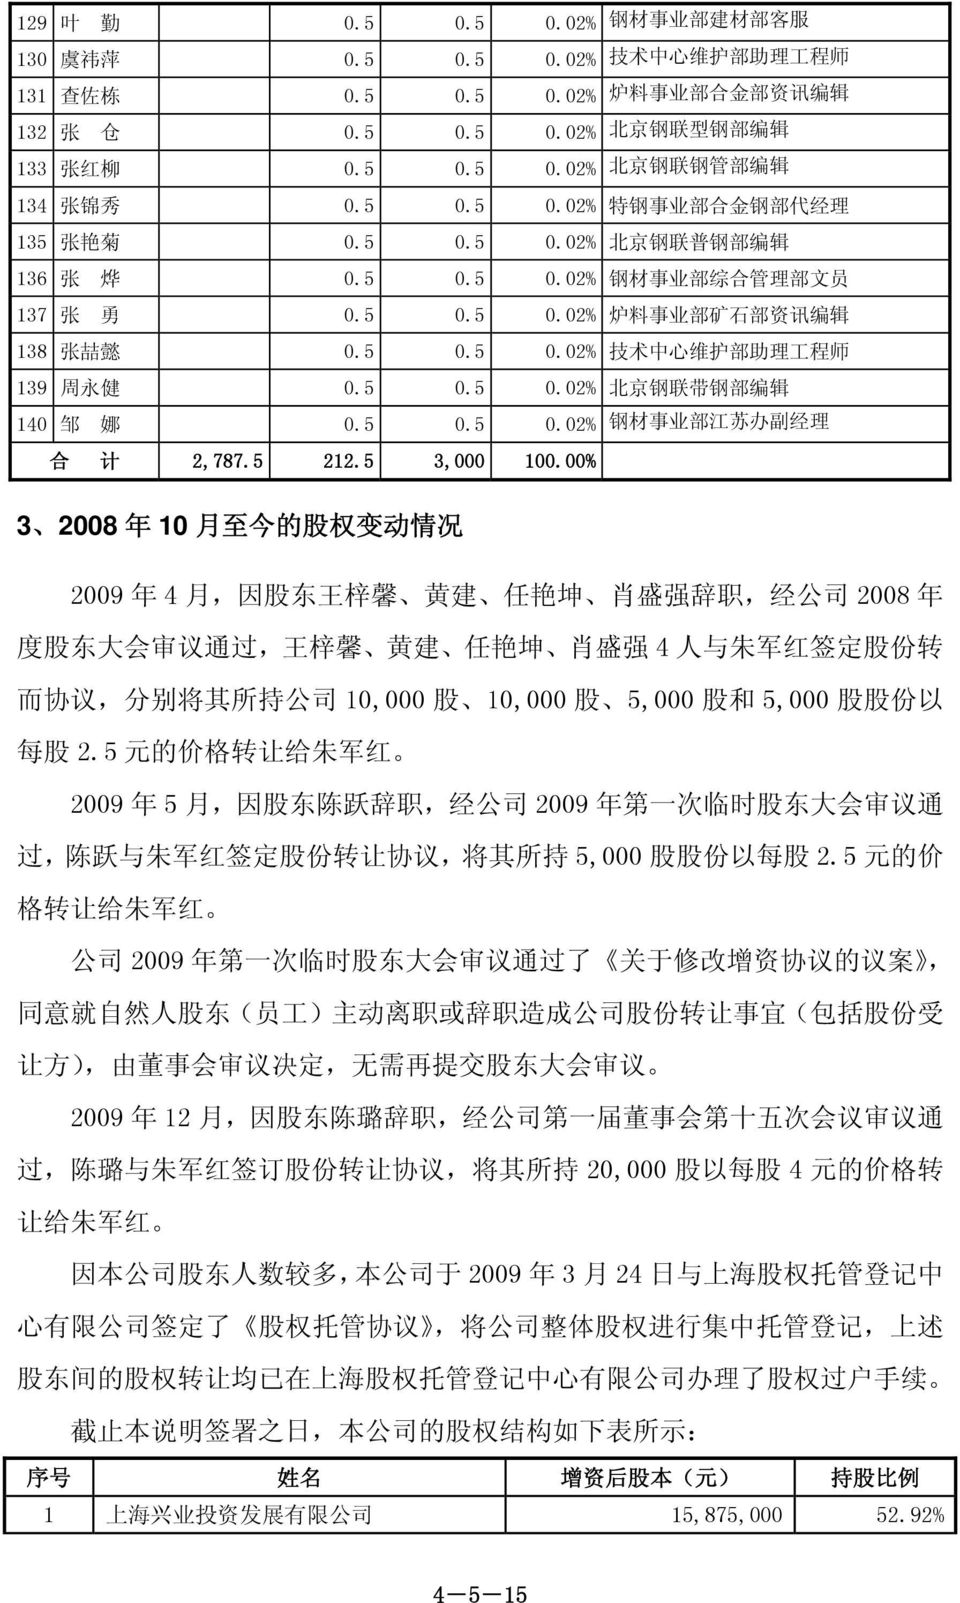 5 0.5 0.02% 北 京 钢 联 带 钢 部 编 辑 140 邹 娜 0.5 0.5 0.02% 钢 材 事 业 部 江 苏 办 副 经 理 合 计 2,787.5 212.5 3,000 100.